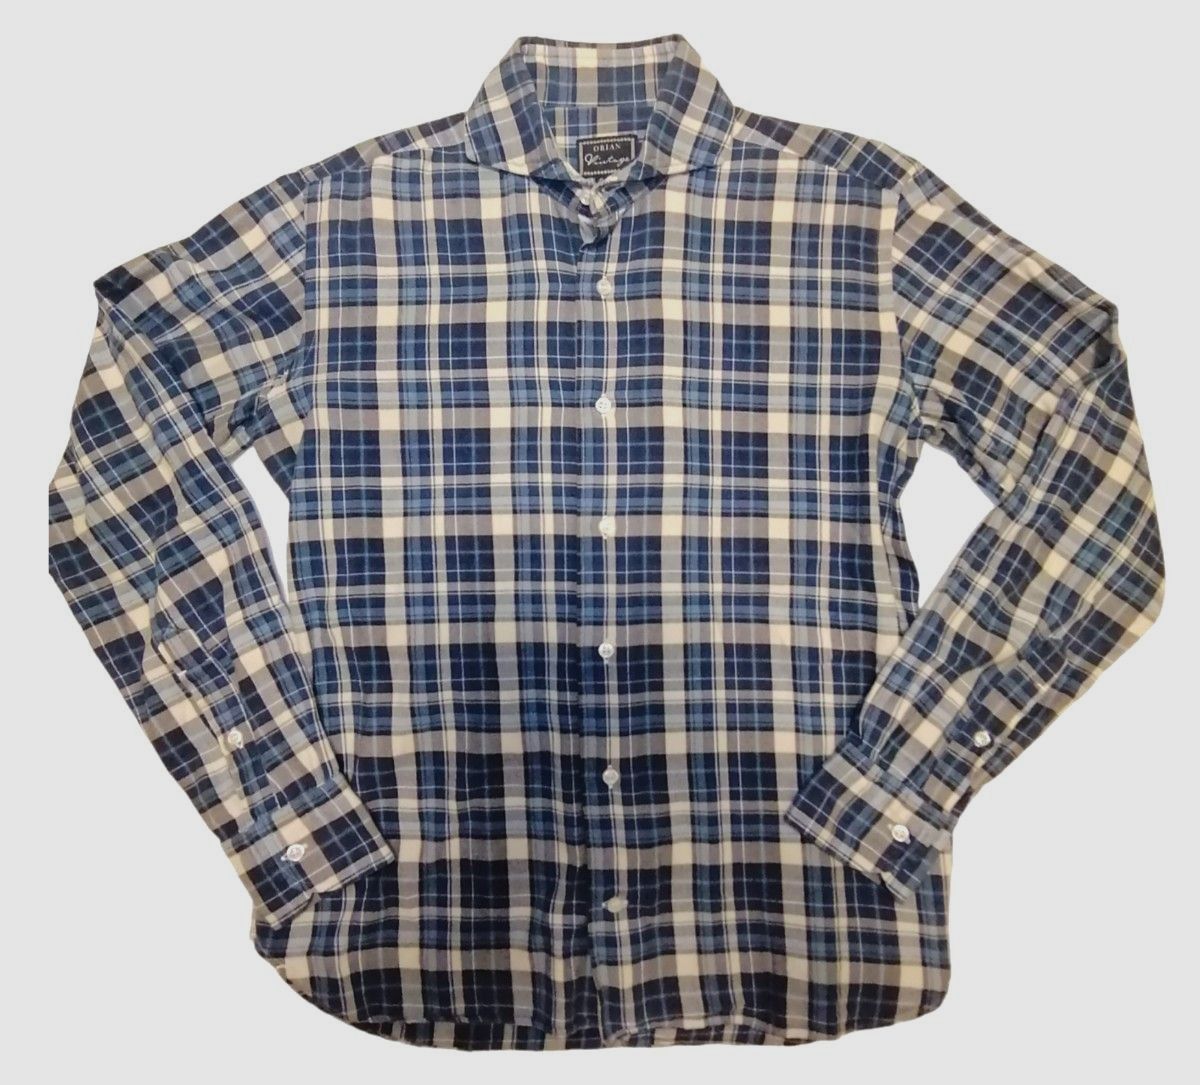 ORIAN Vintage 38-15 スリムフィット イタリア製 ドレスシャツ 長袖シャツ チェックシャツ ネルシャツ